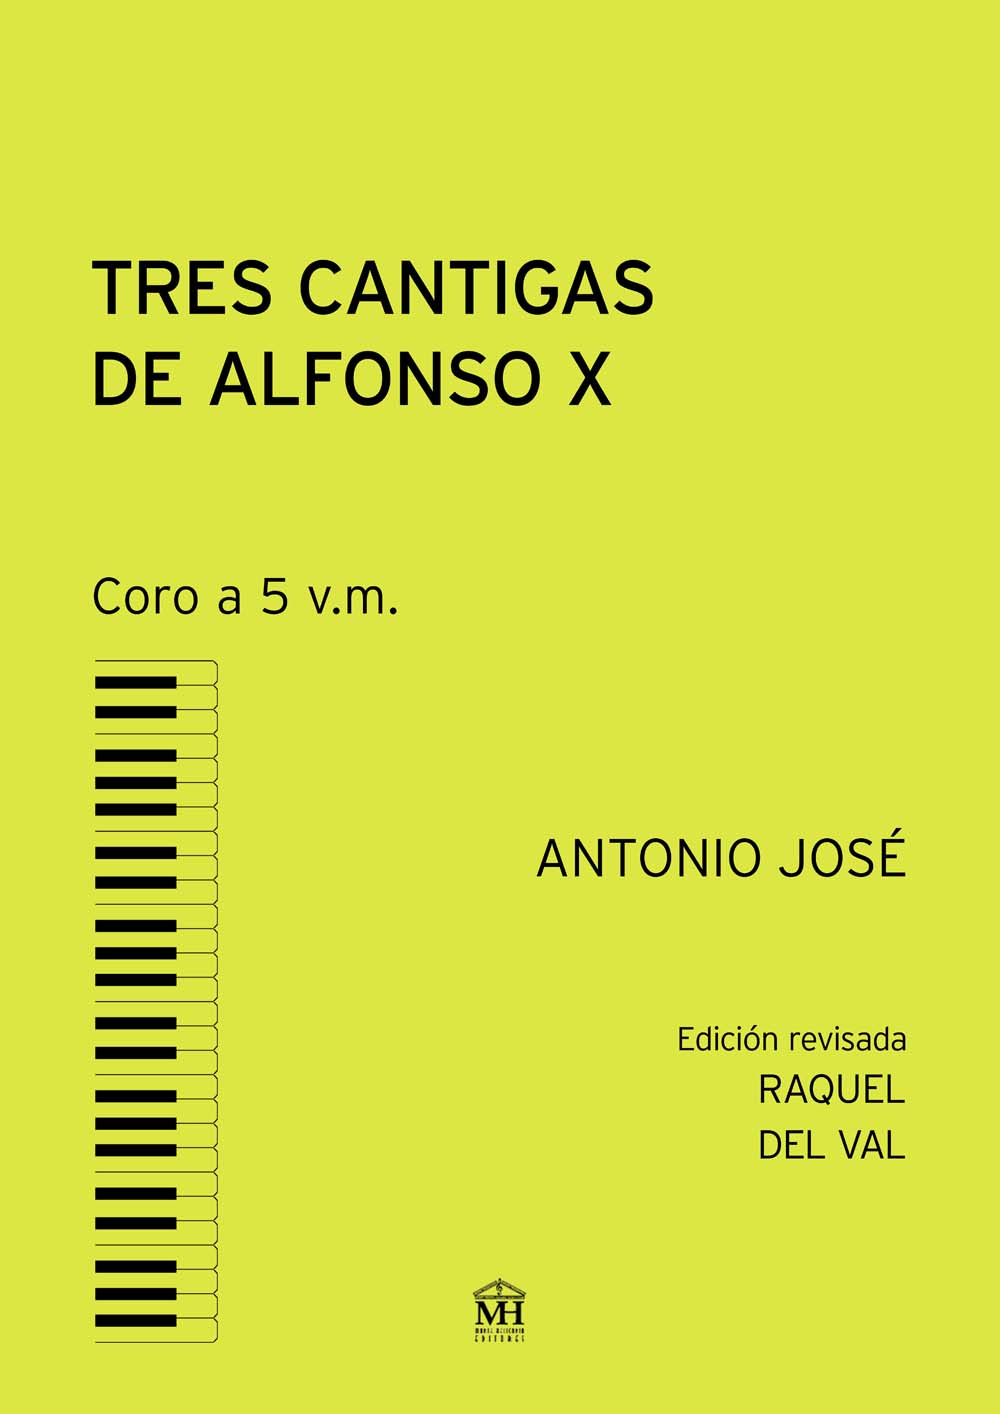 Tres cantigas de Alfonso X